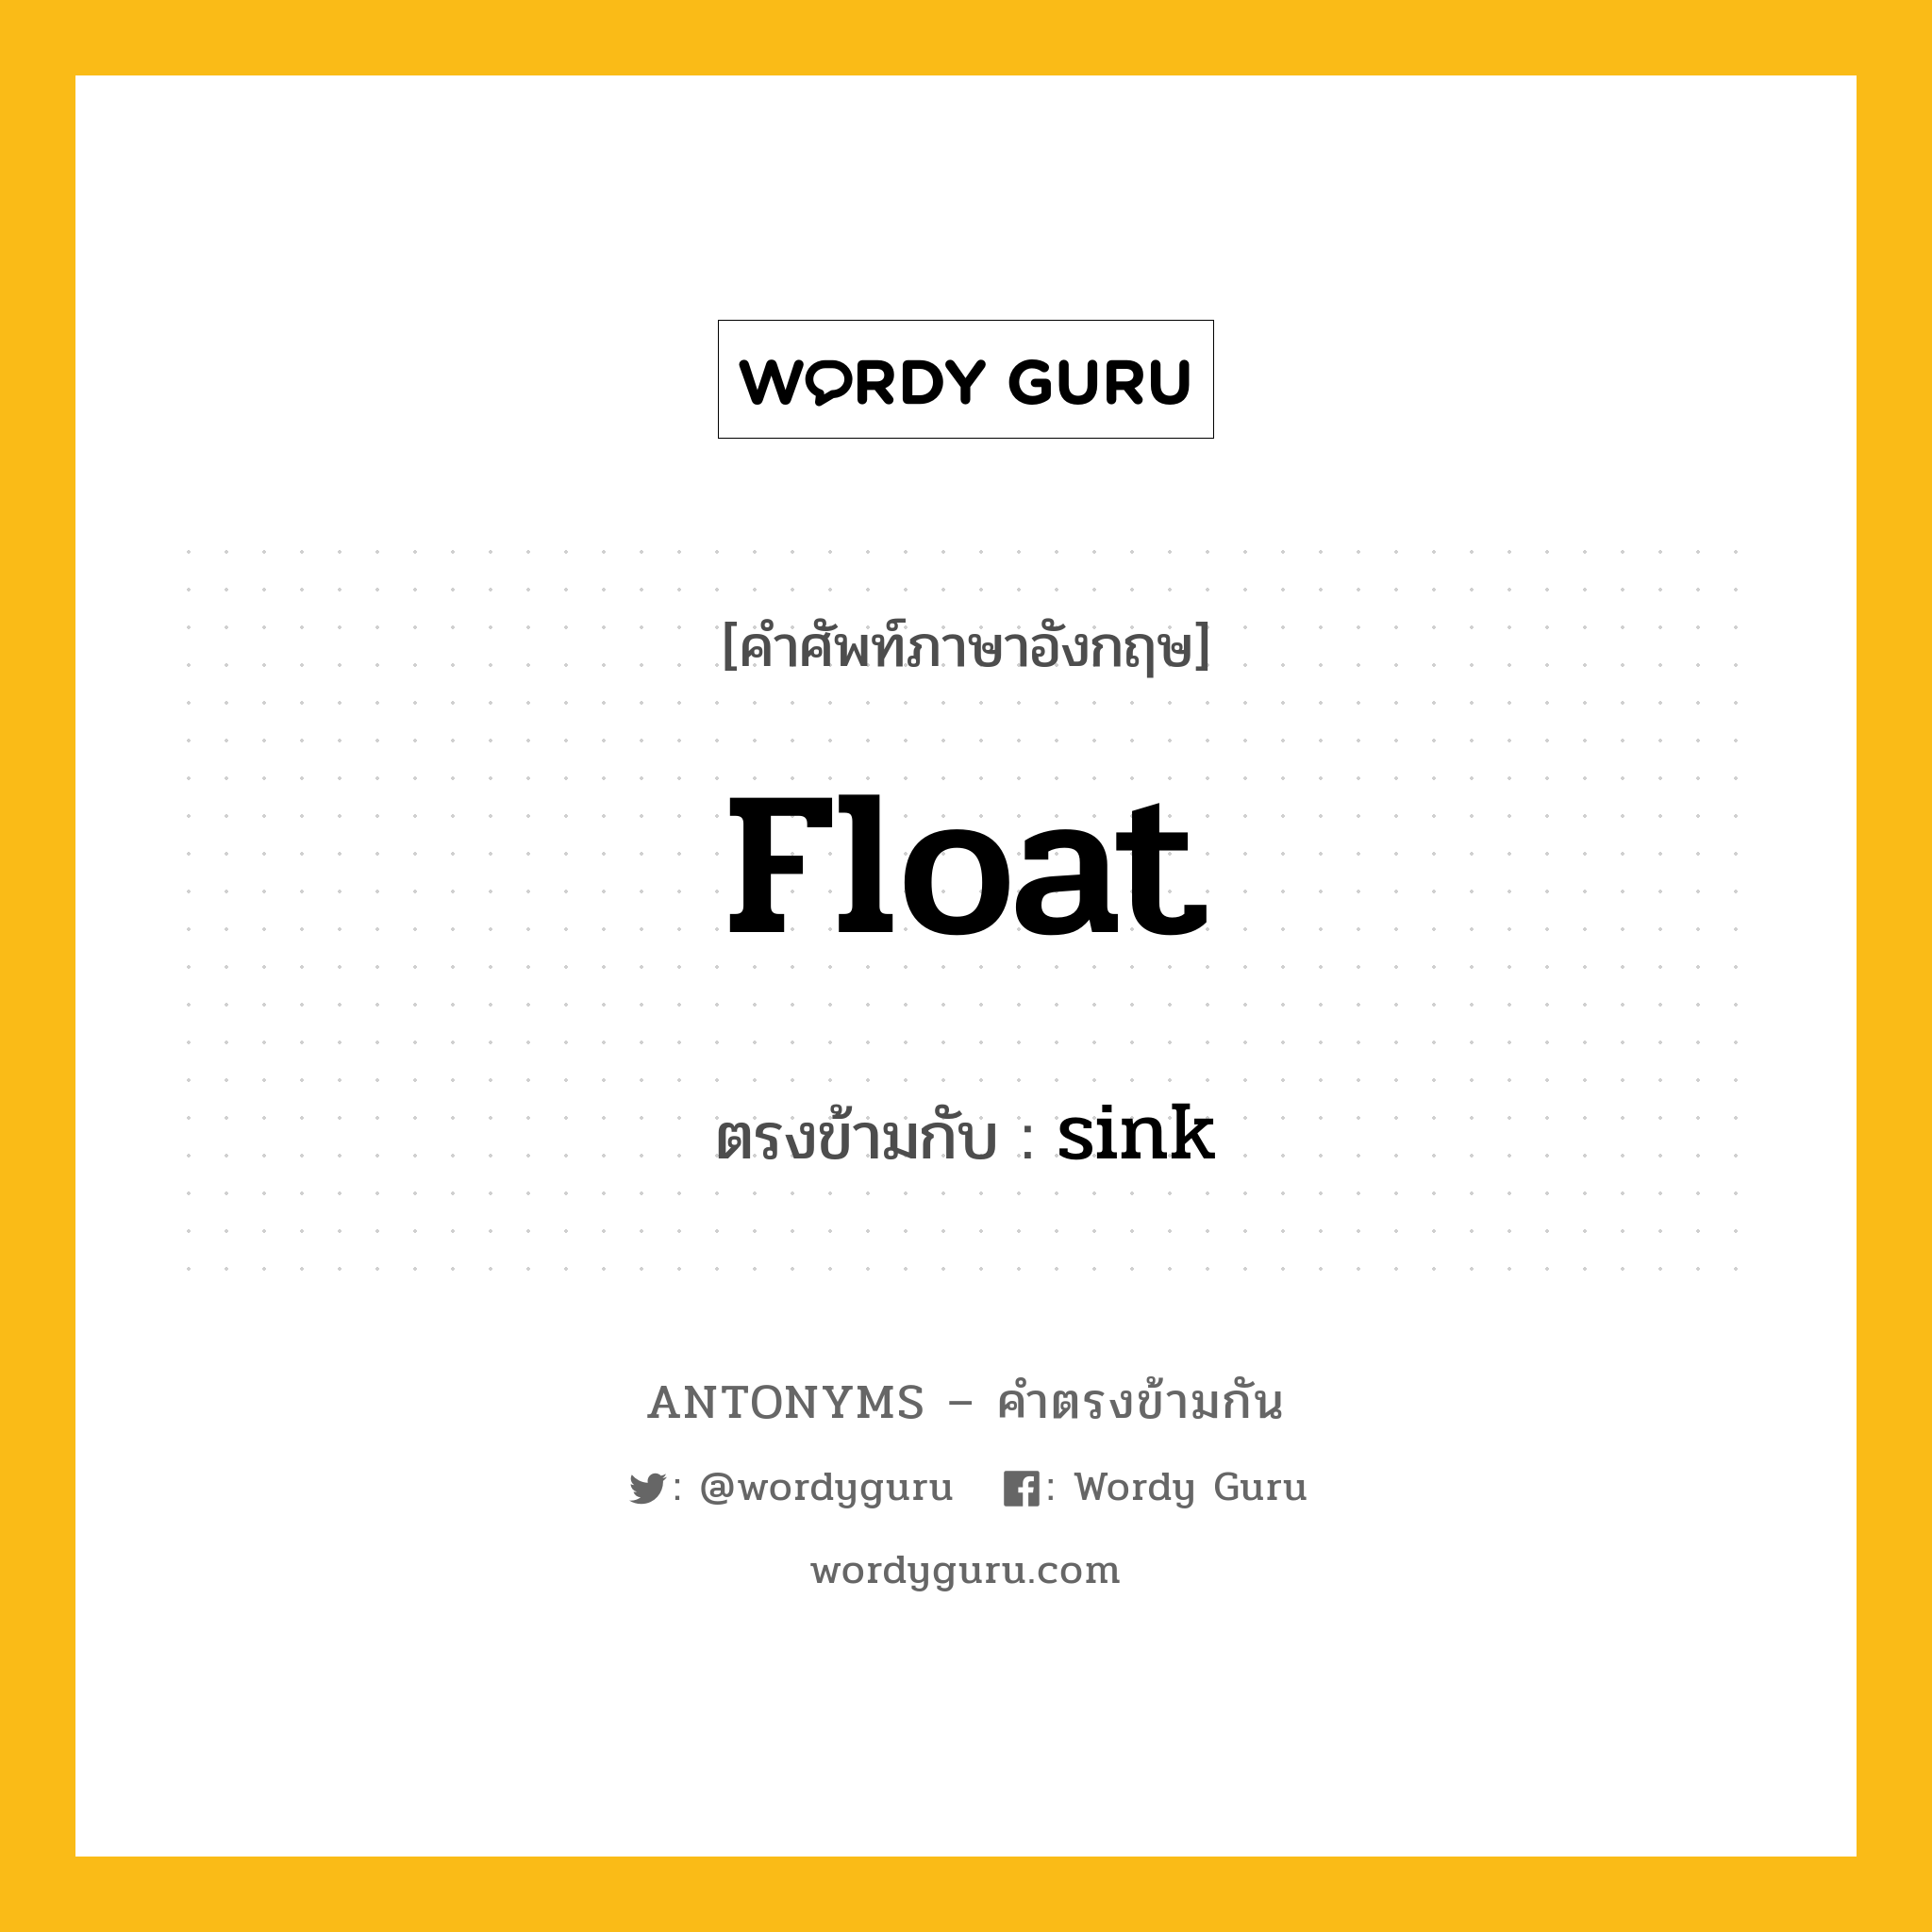 float เป็นคำตรงข้ามกับคำไหนบ้าง?, คำศัพท์ภาษาอังกฤษ float ตรงข้ามกับ sink หมวด sink